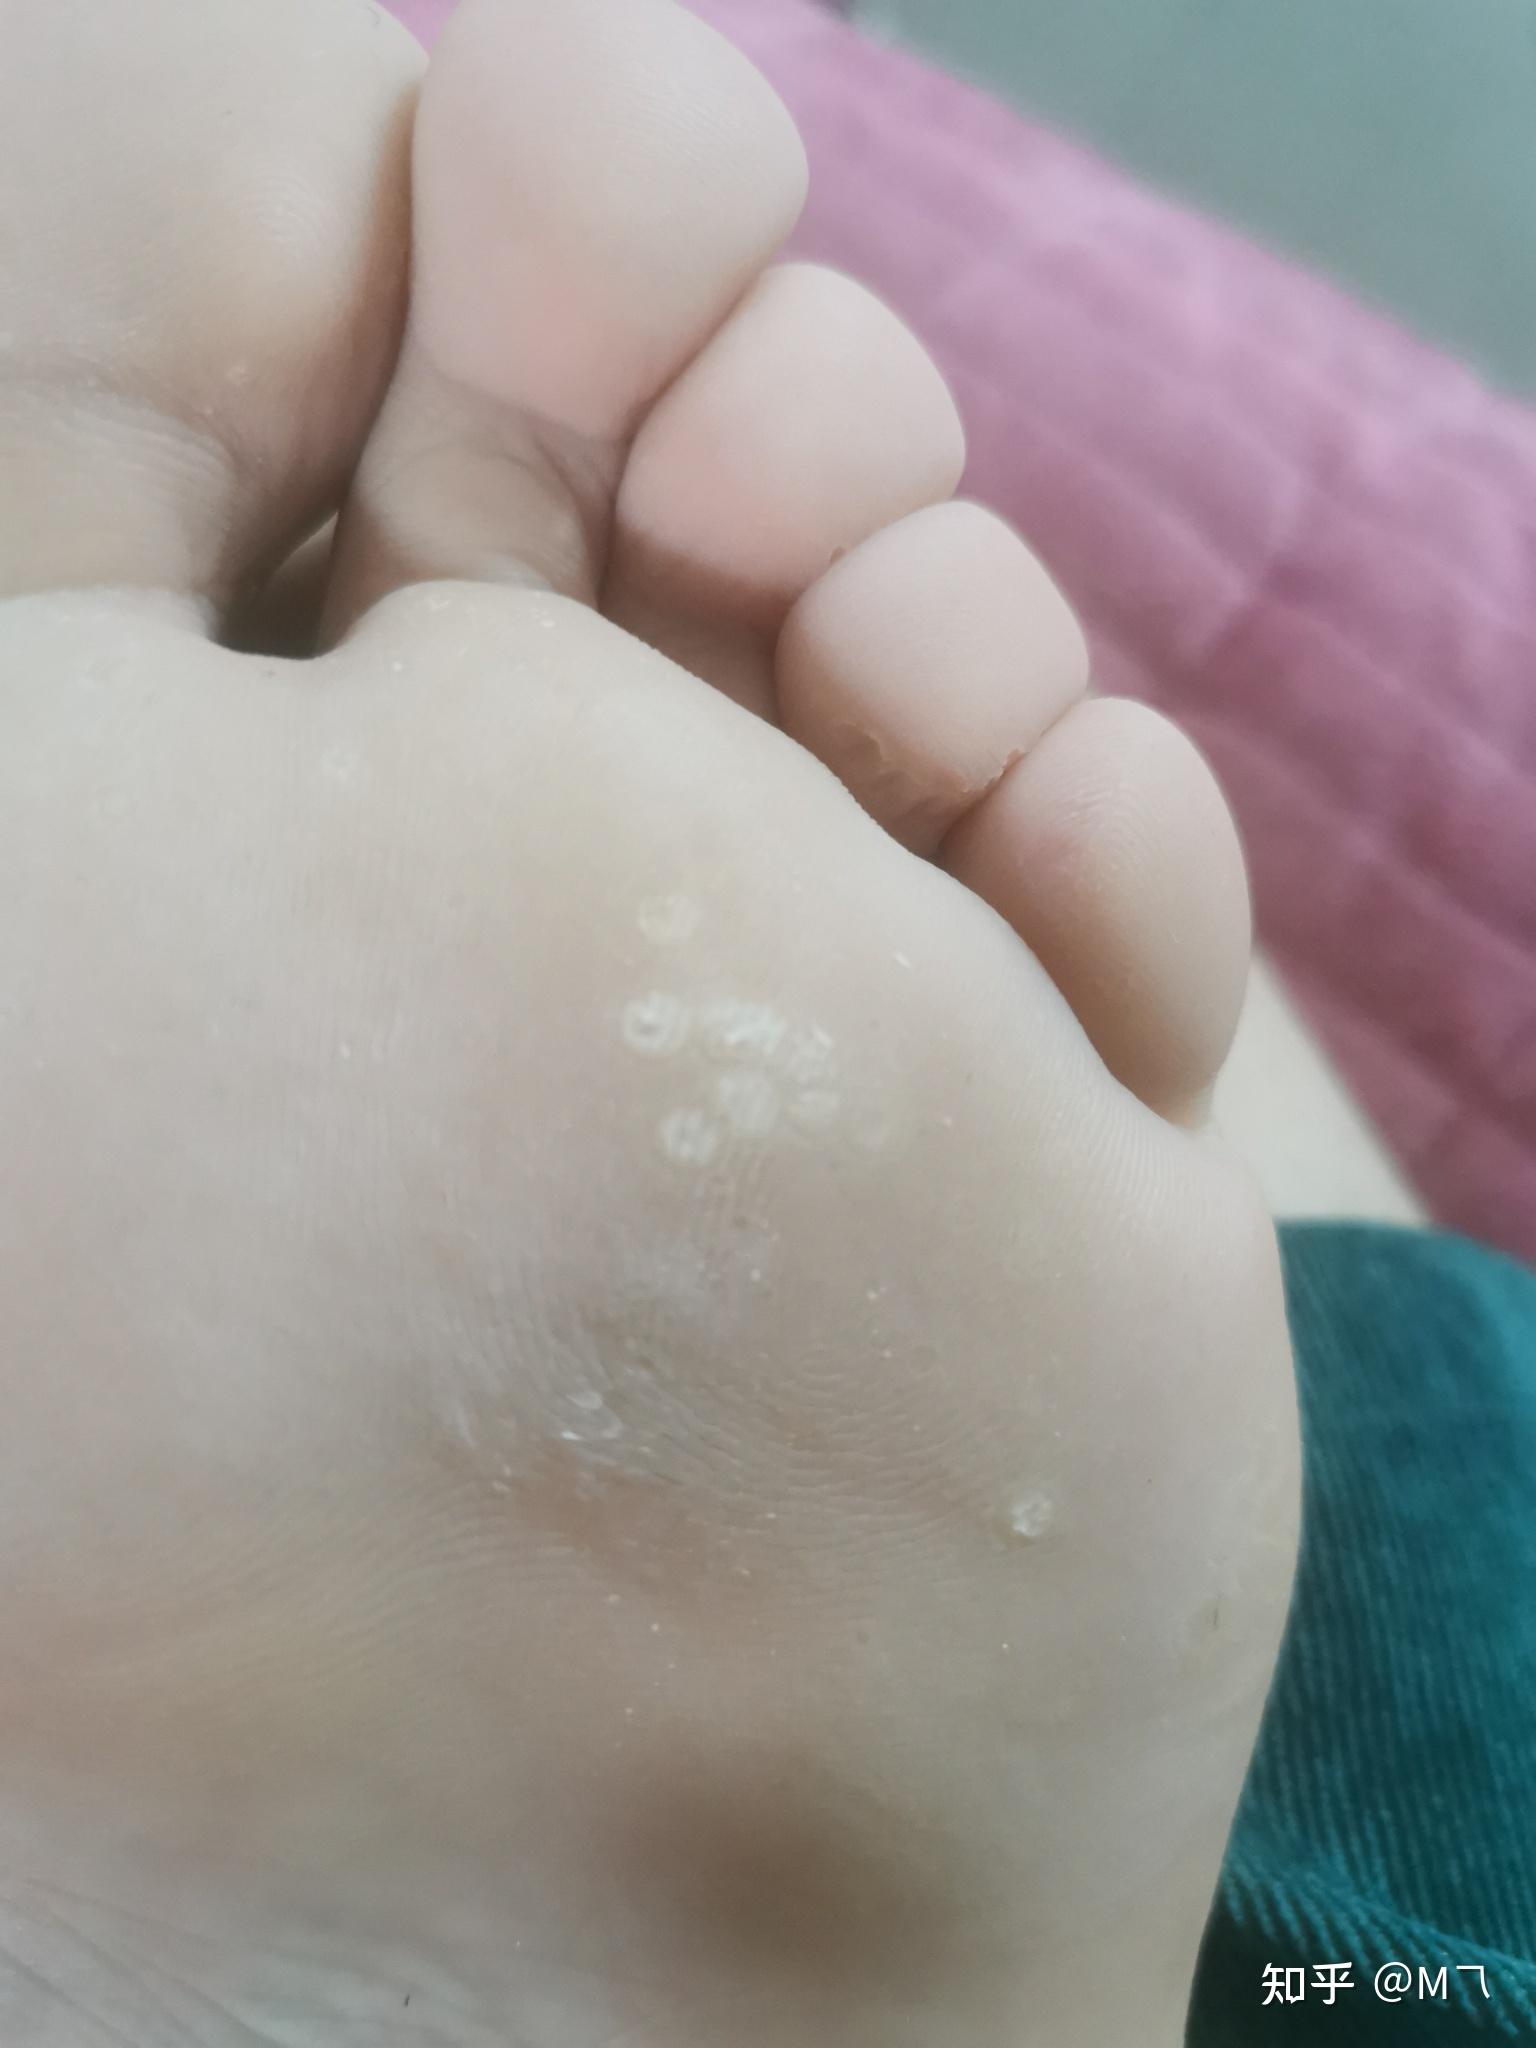 泡完脚发现脚底板上有很多白泡,不痛不痒,谁知道这是什么? 